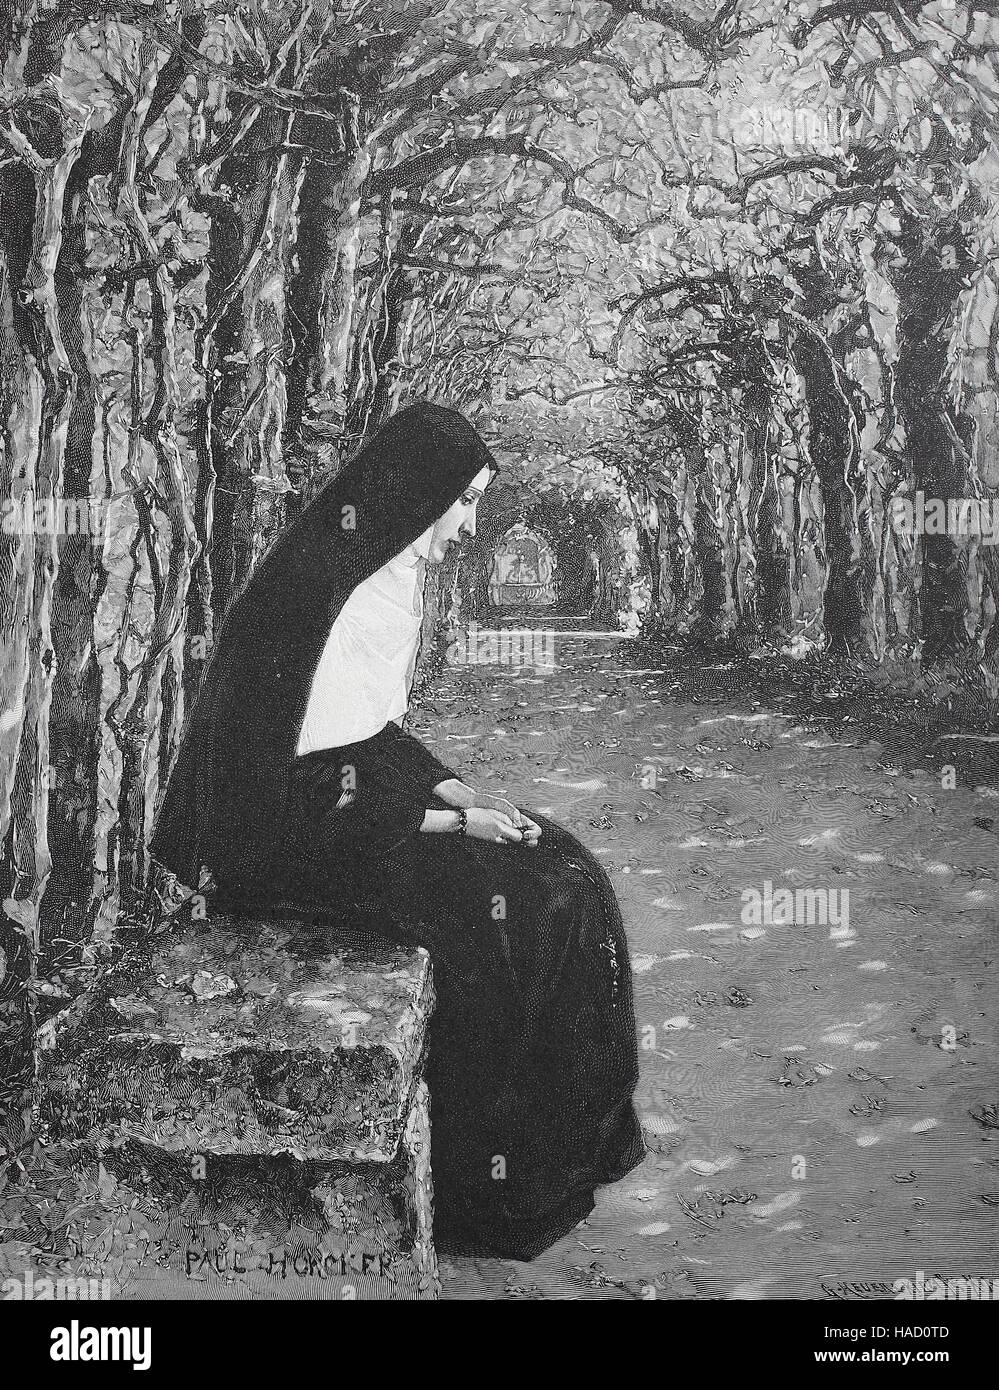 Nonne, nun seduta su una panchina nel parco, da Paul Hoecker, illustrazione pubblicato nel 1880 Foto Stock